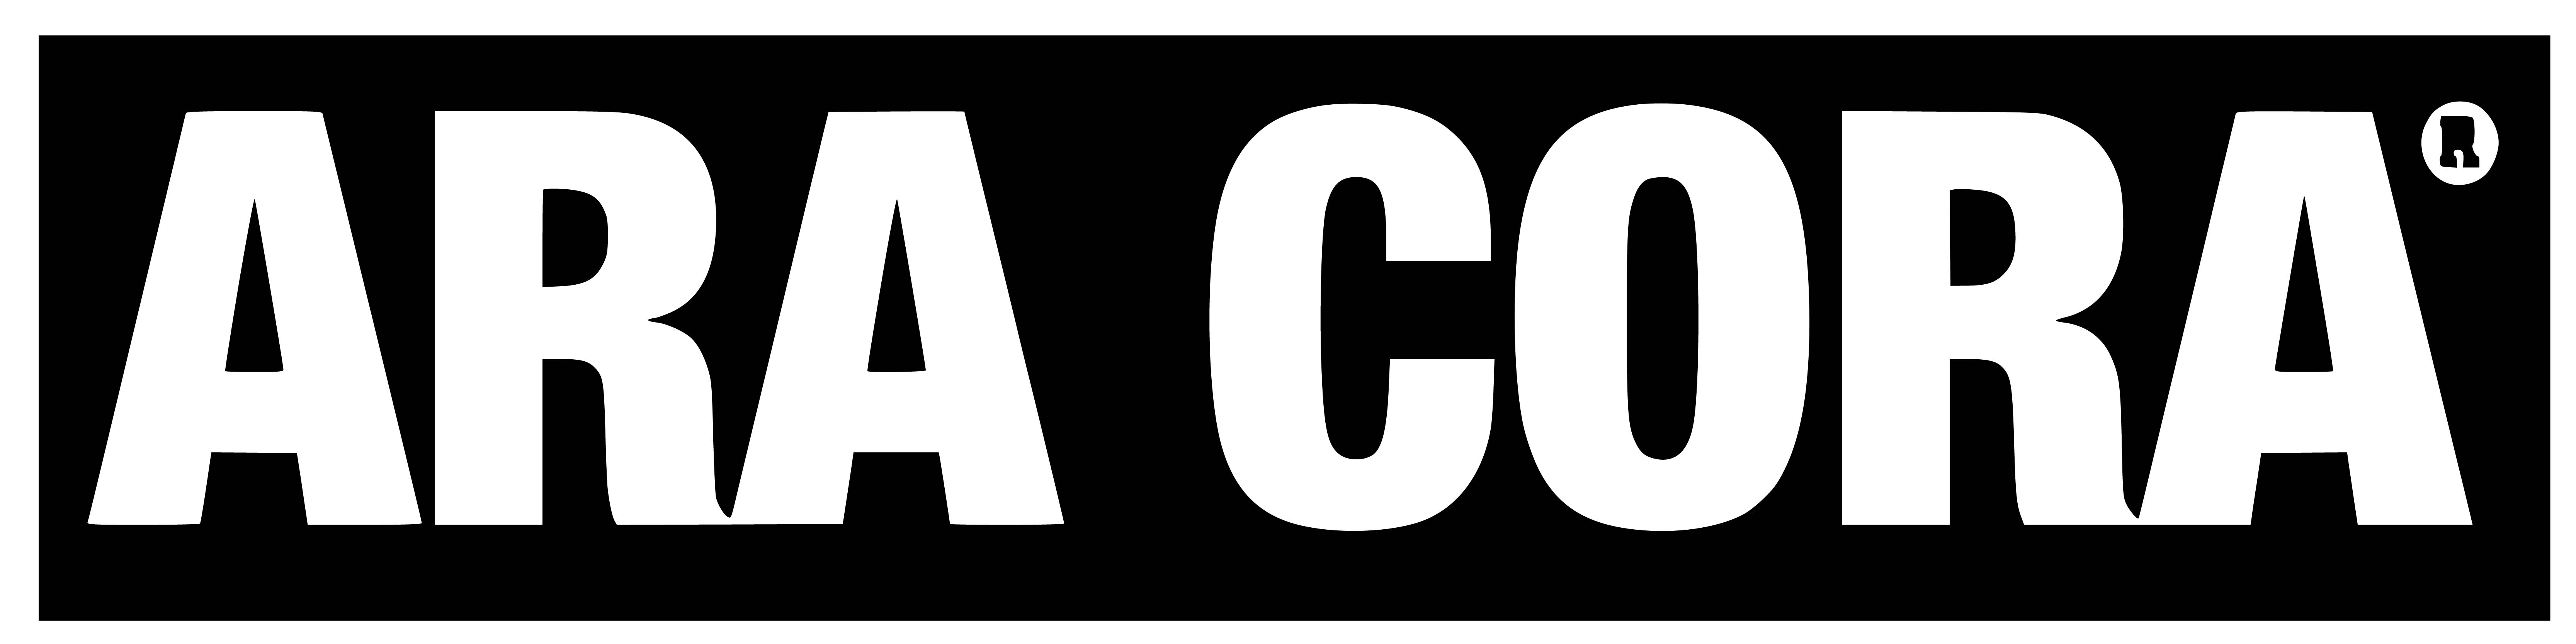 Aracora Logo